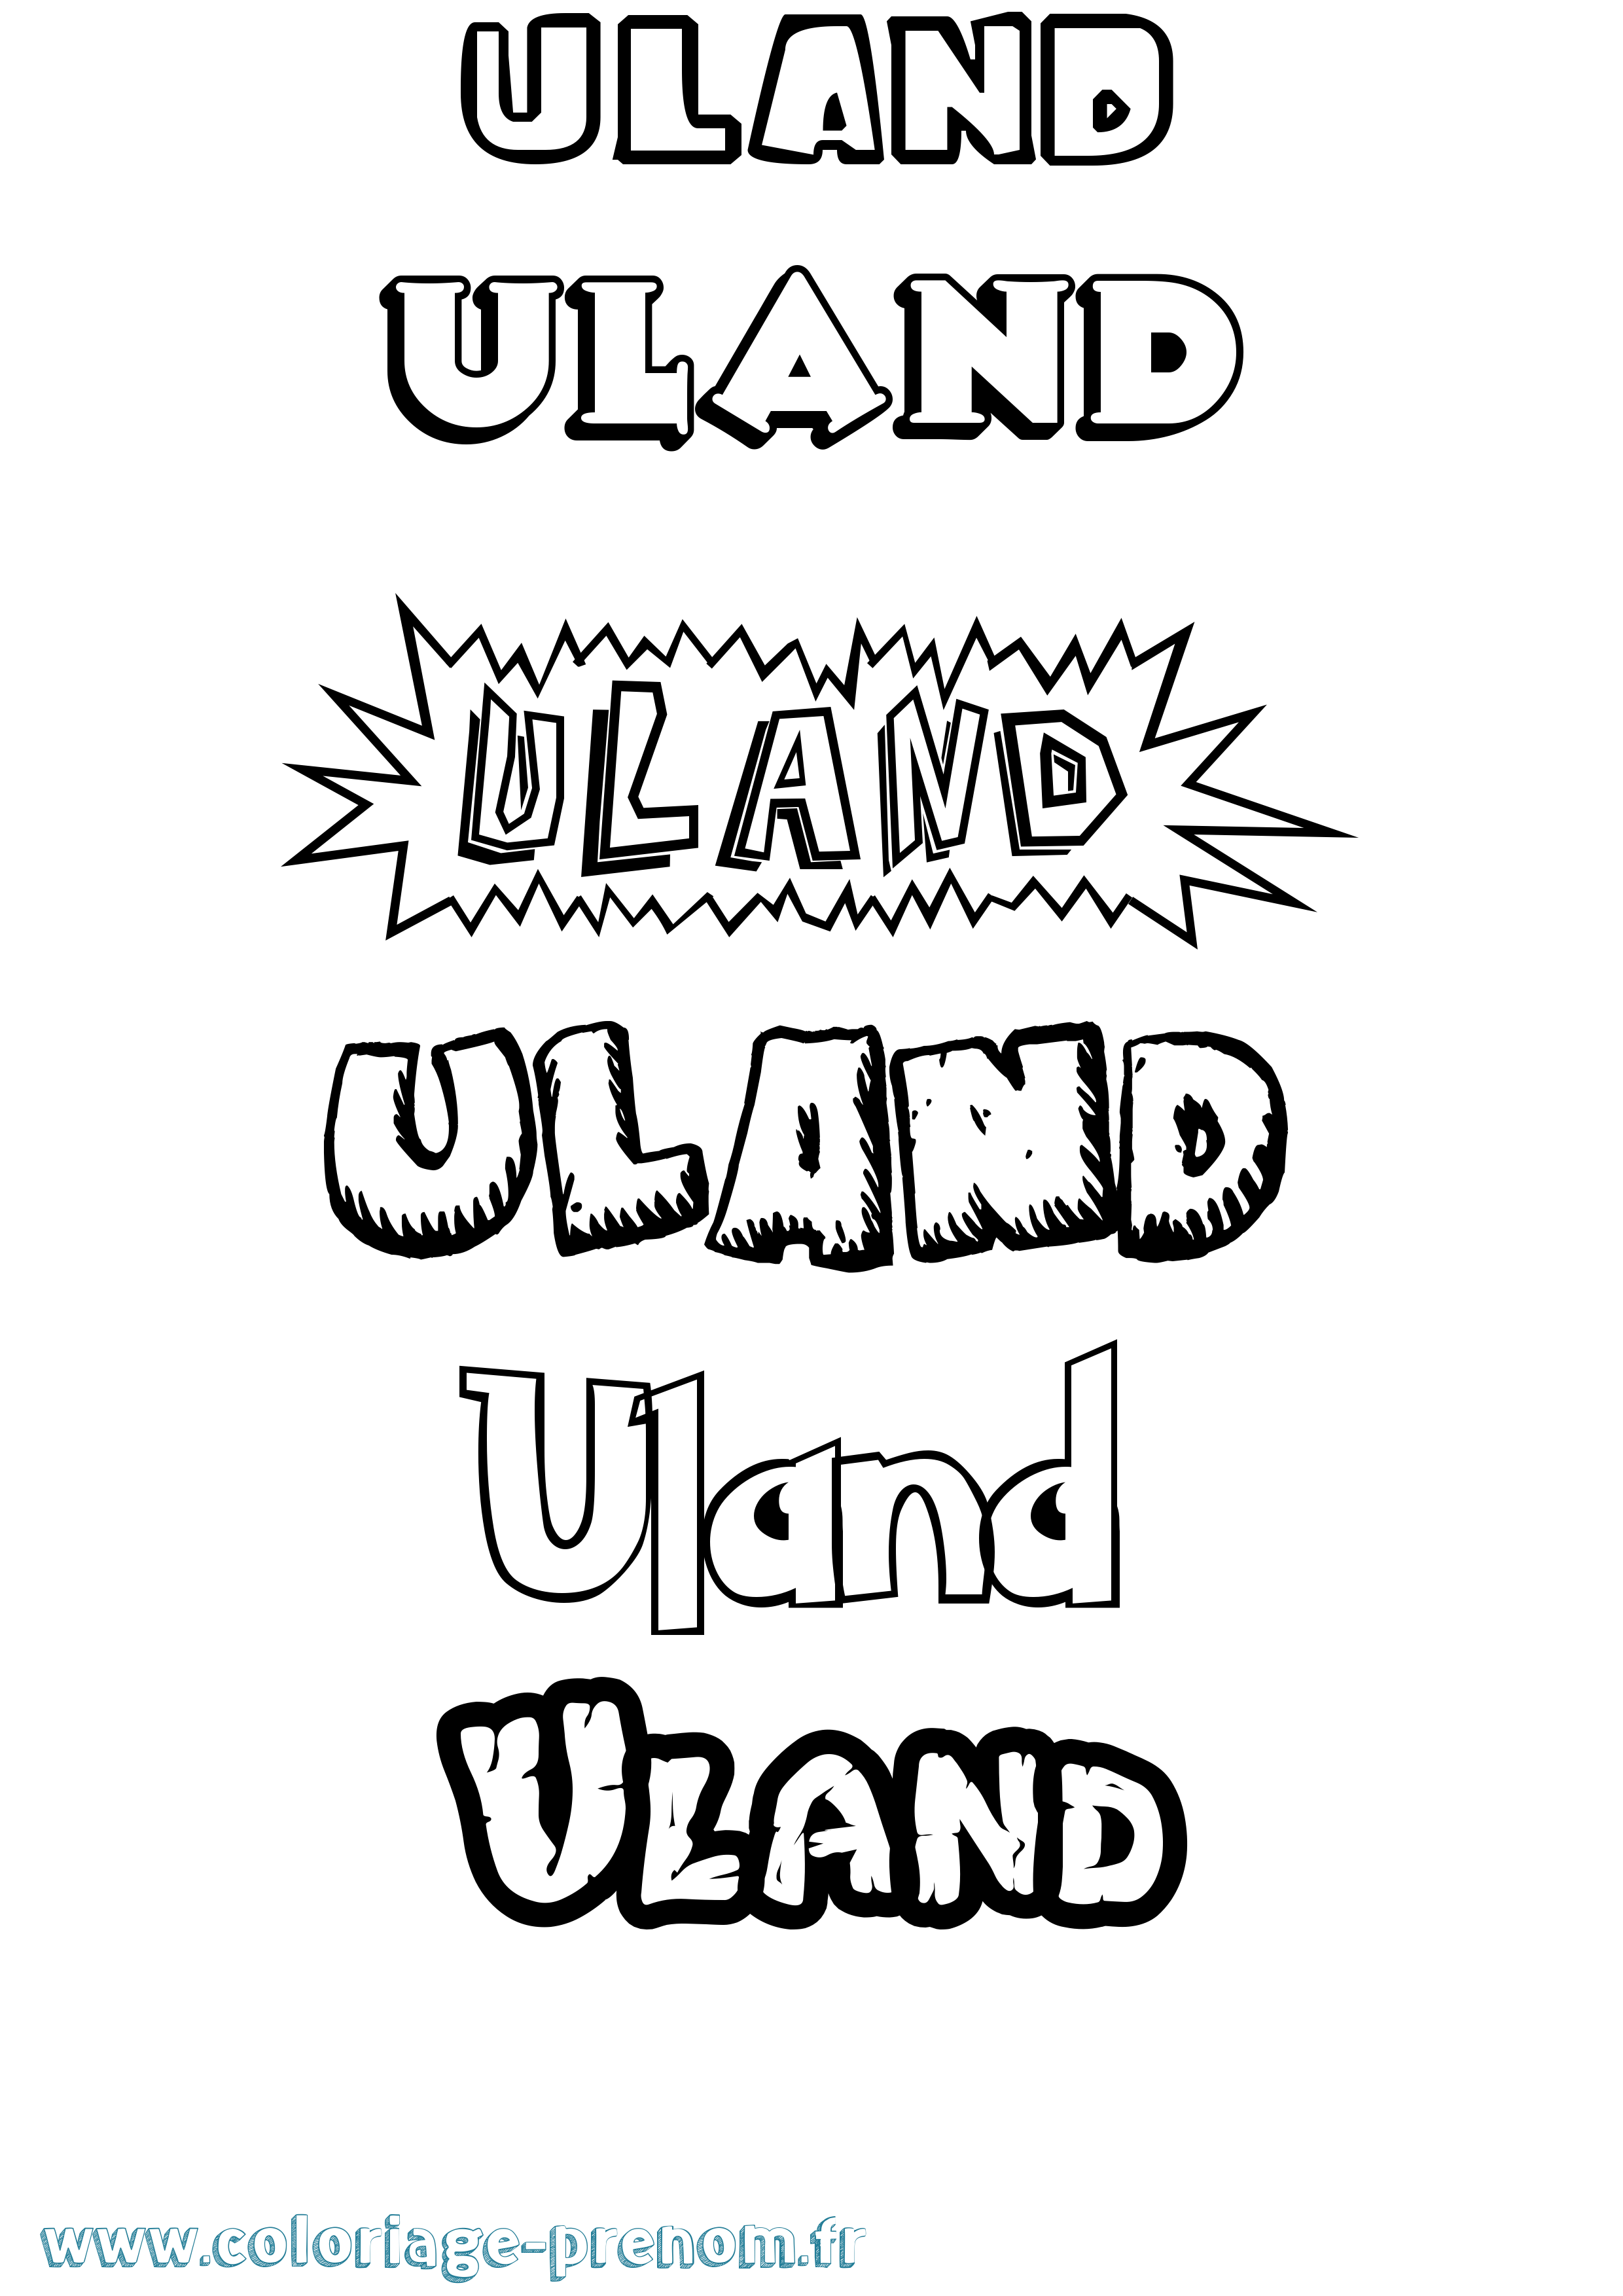 Coloriage prénom Uland Dessin Animé